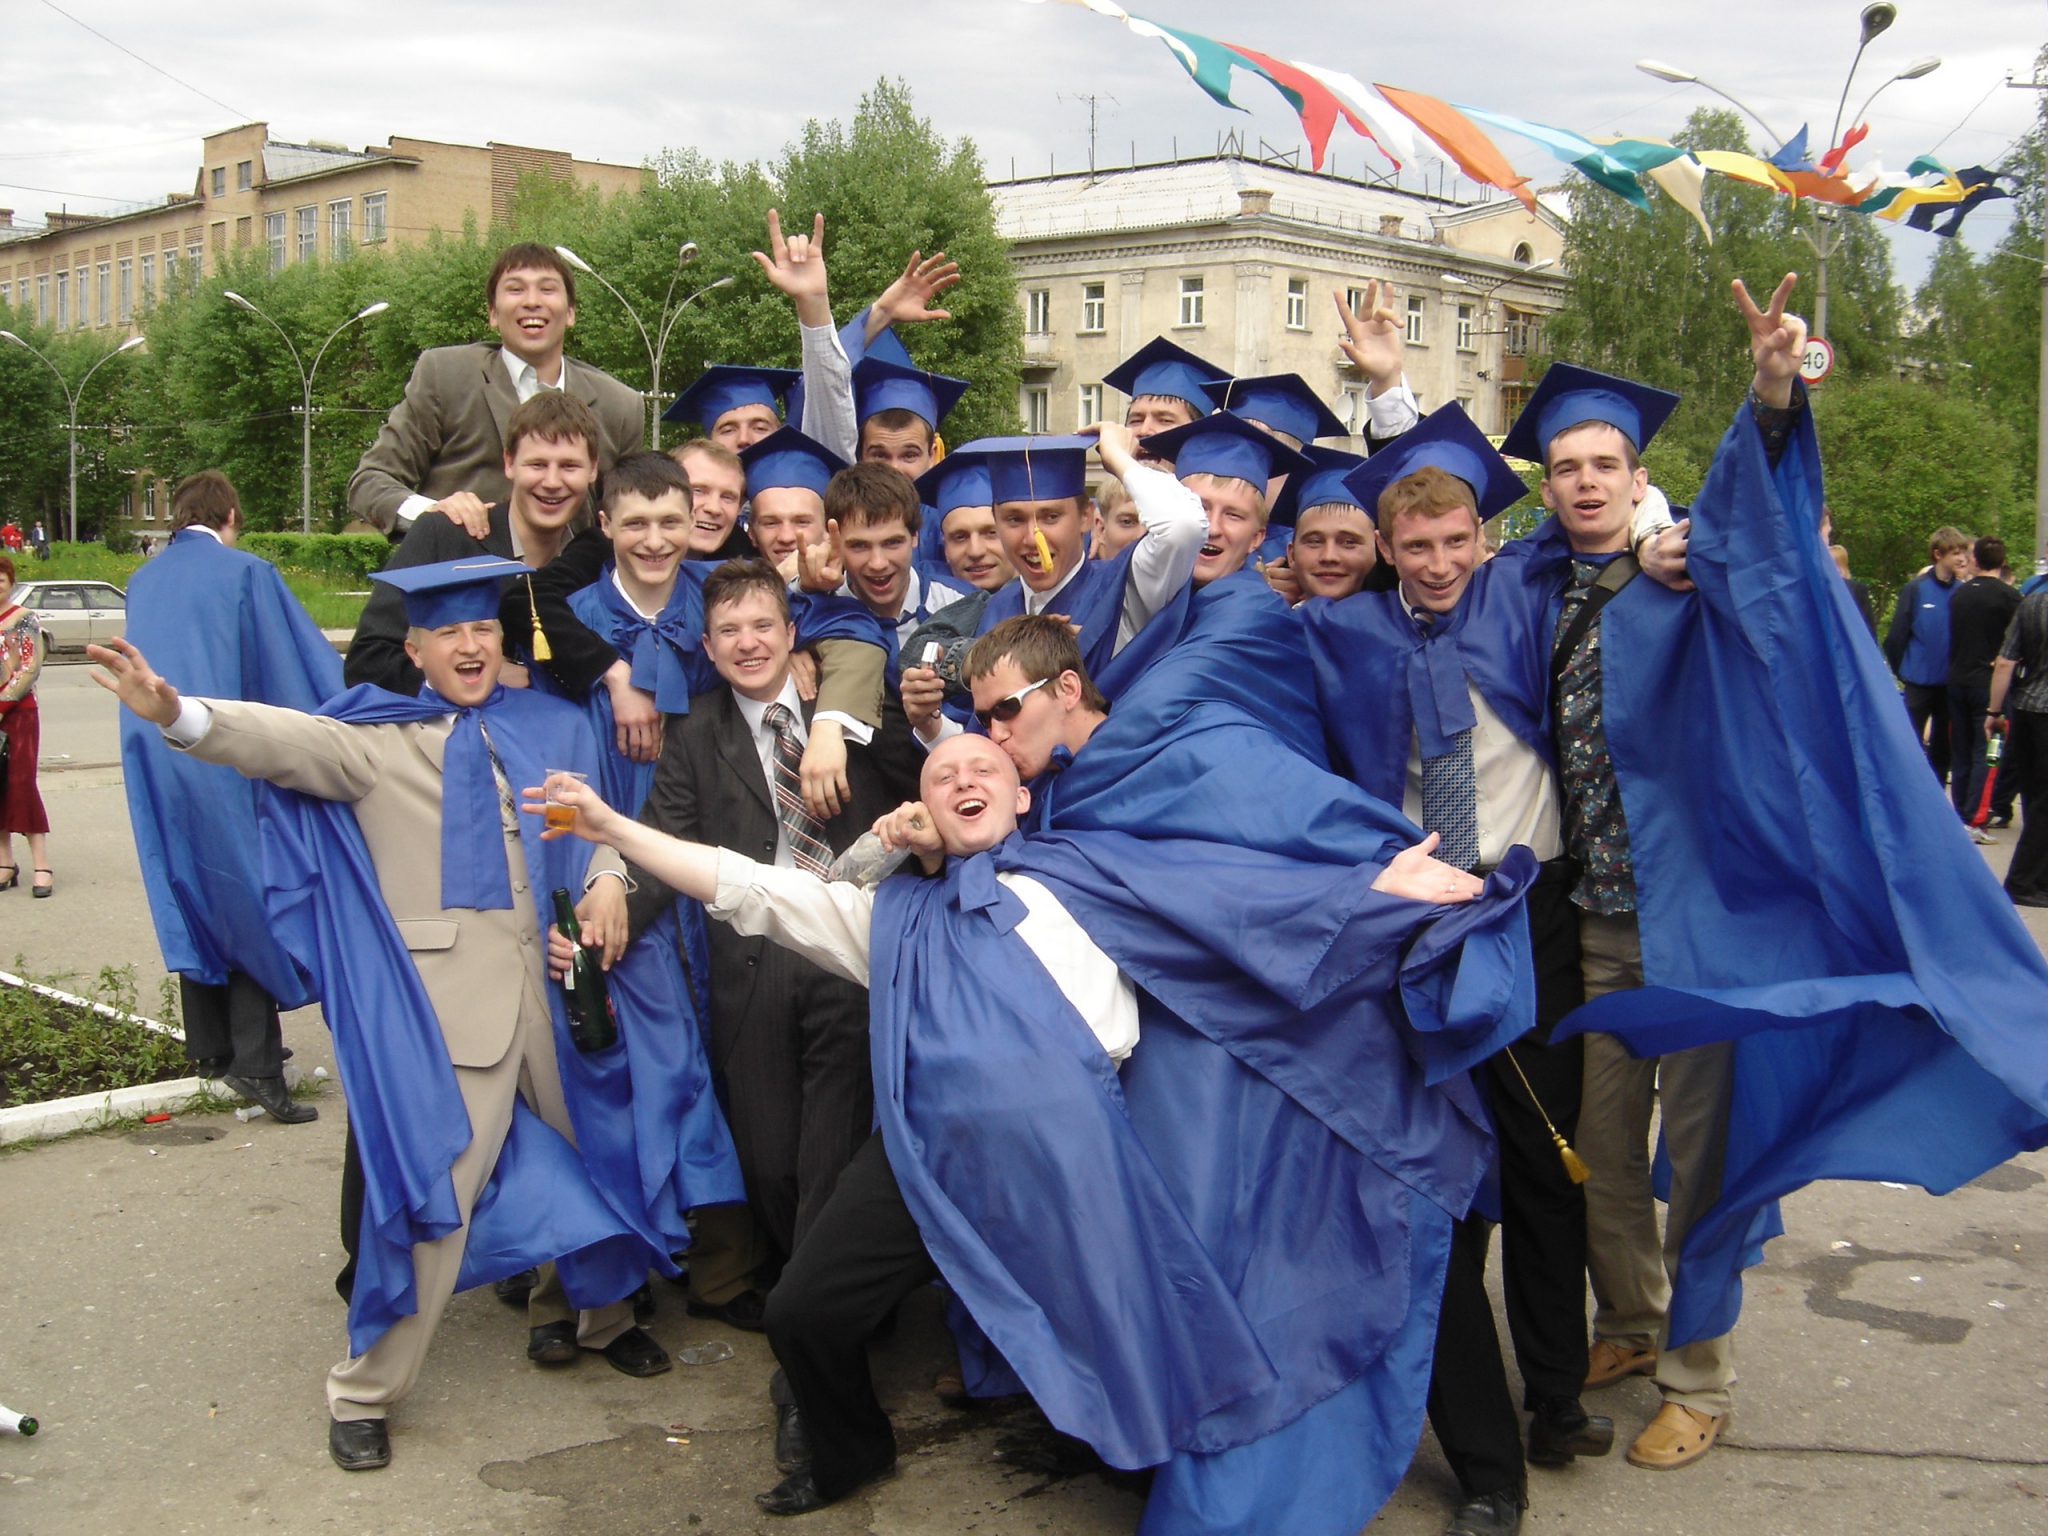 УГТУ 50 лет: выпускники поздравляют и делятся фотографиями